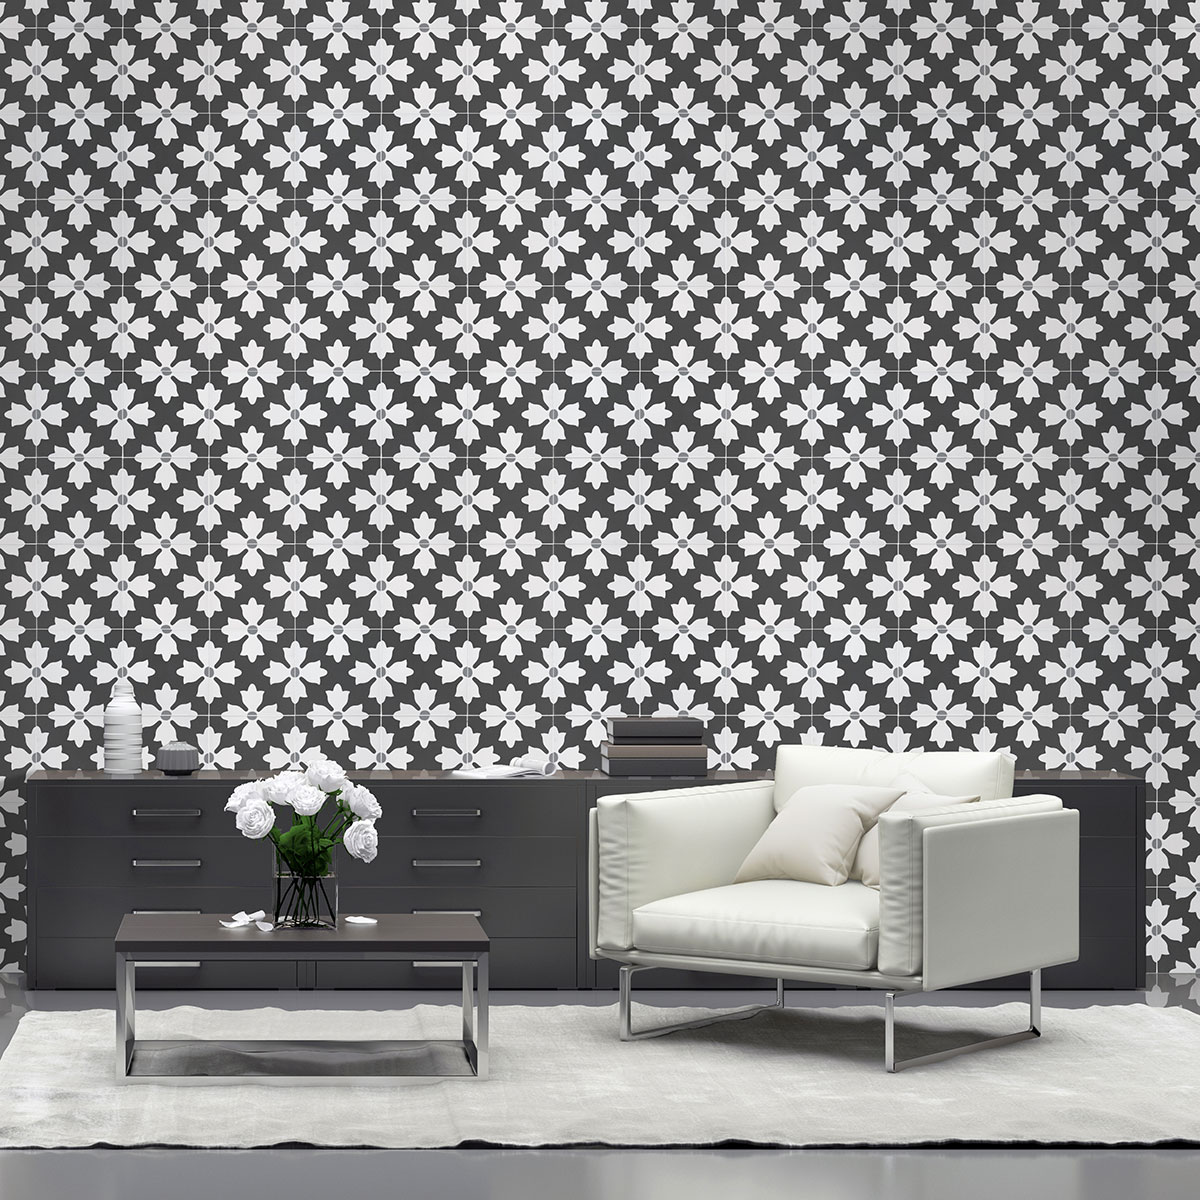 Kasbah Encaustic Tile on livingroom wall